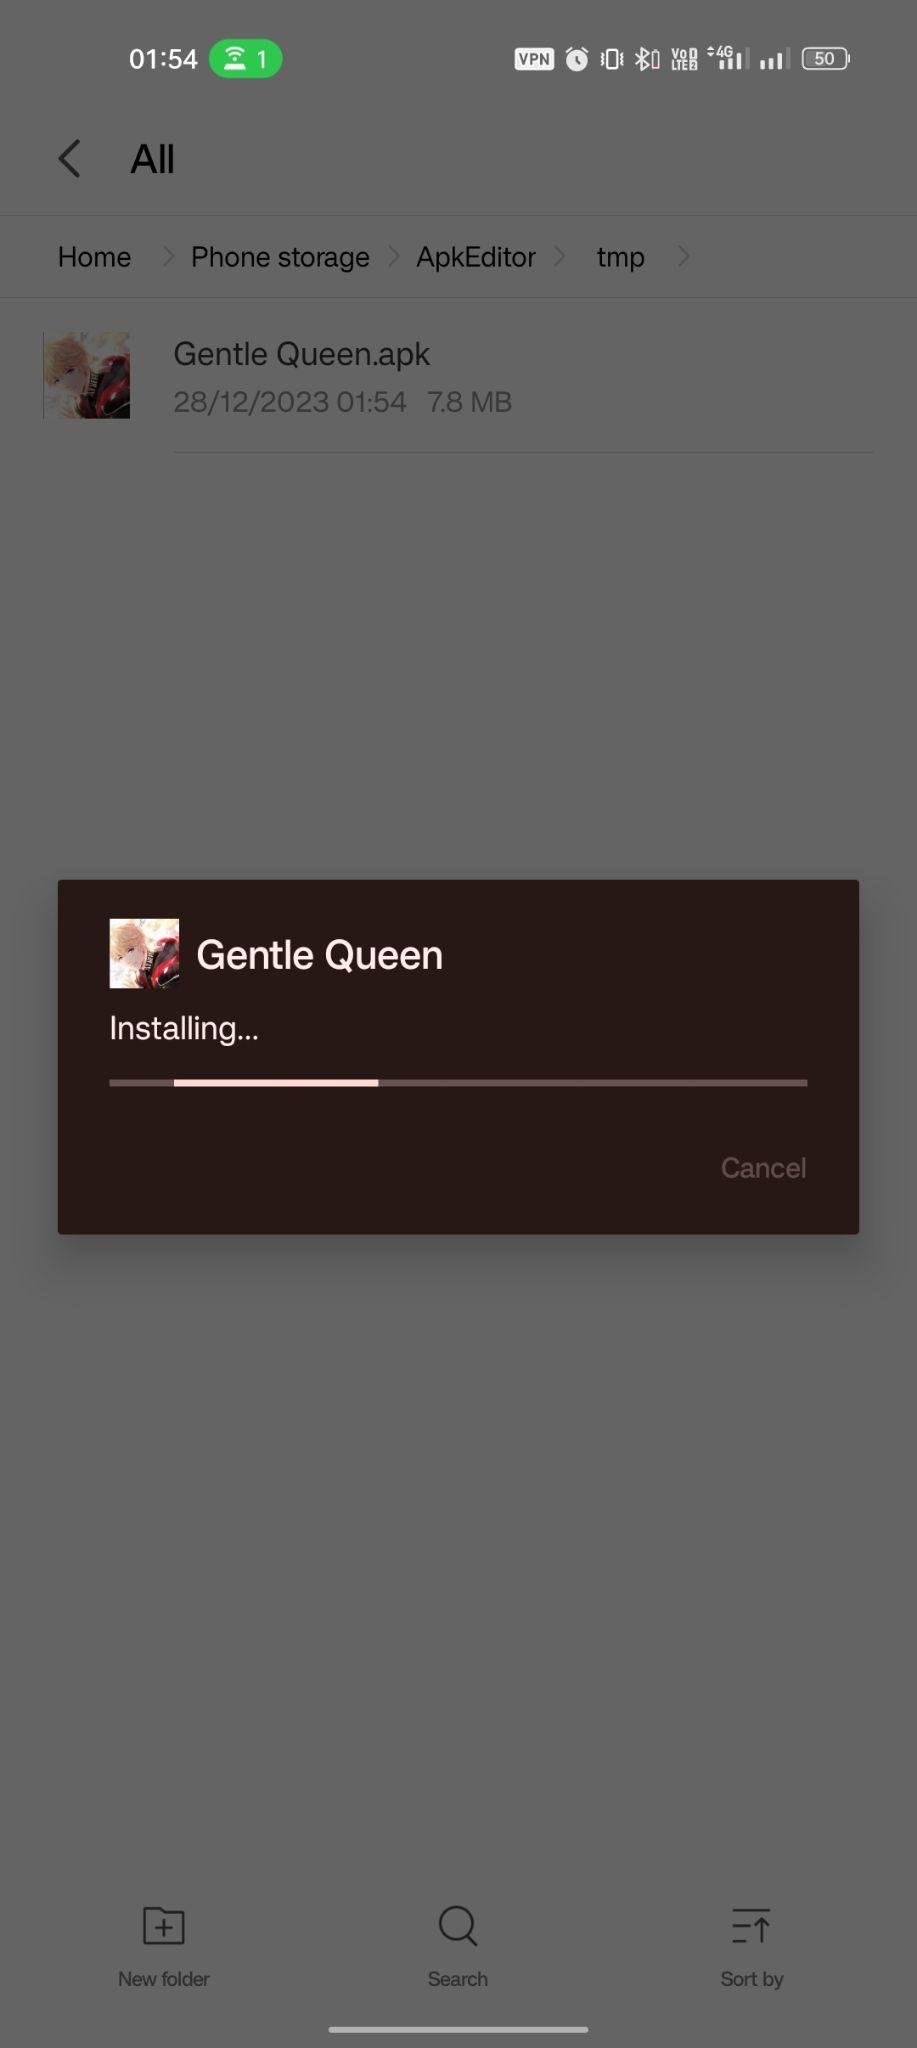 Gentle Queen apk installing